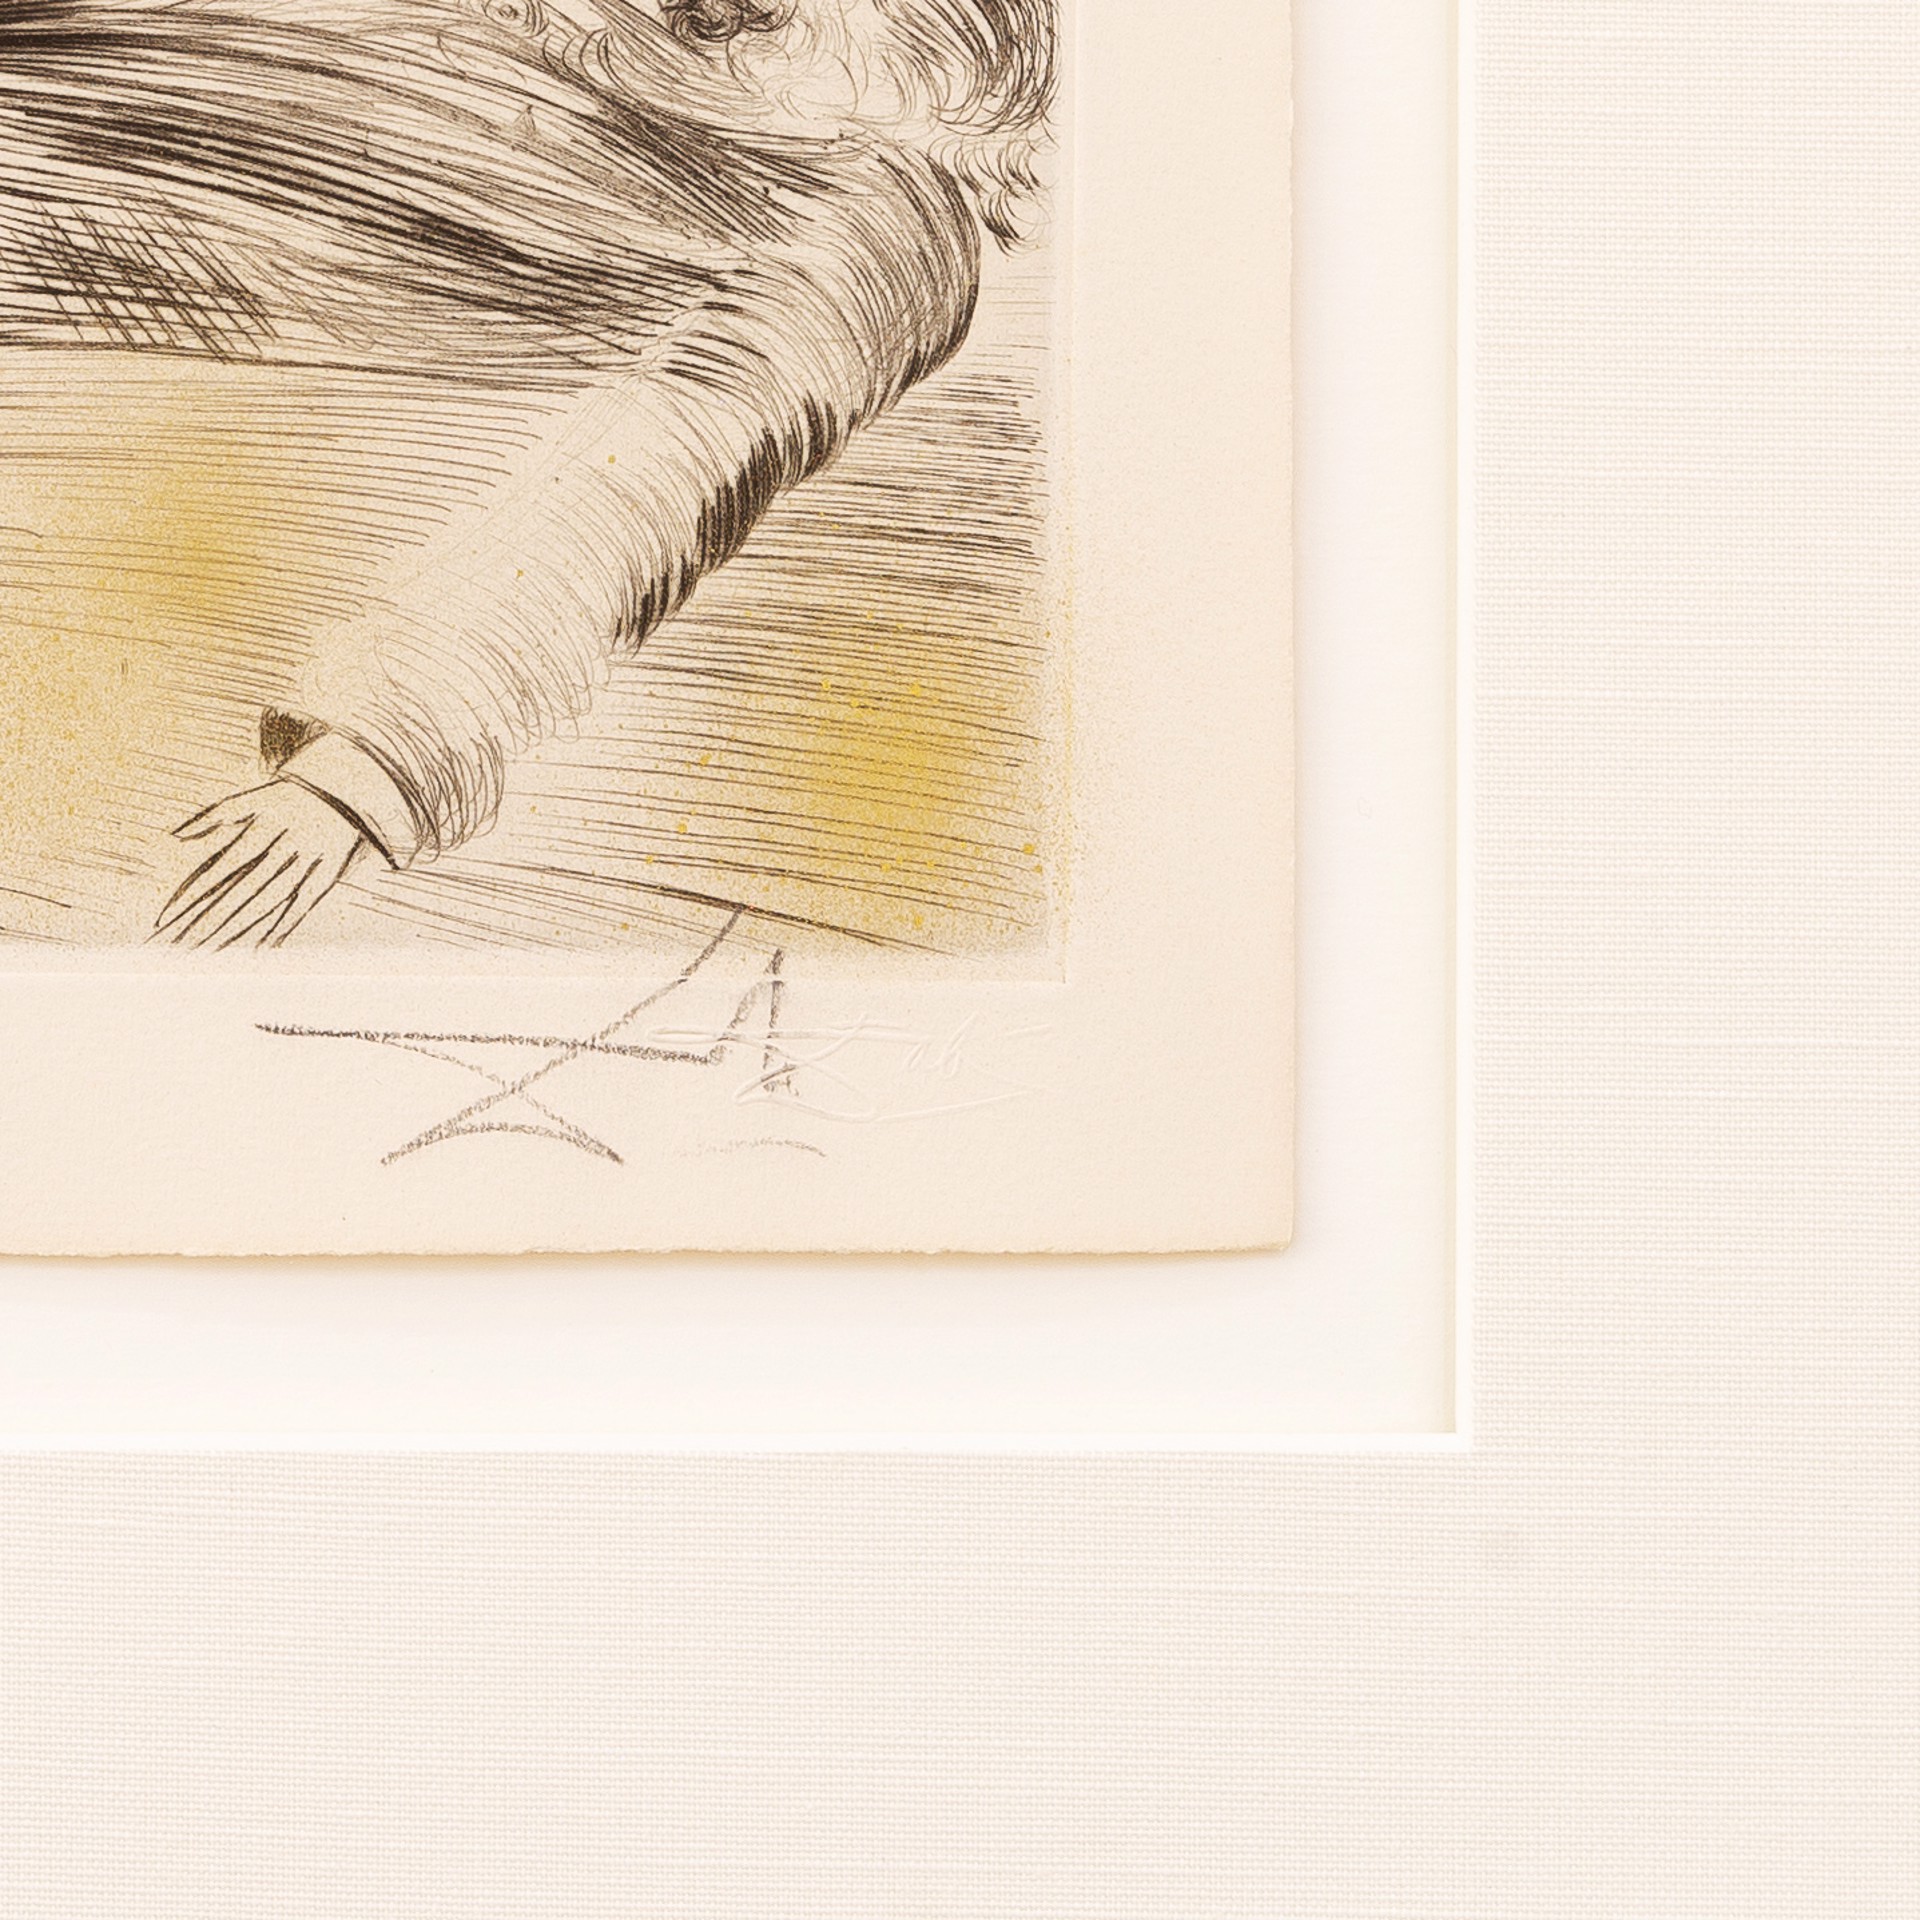 Venus in Furs "Kneeling Woman" by Salvador Dalí